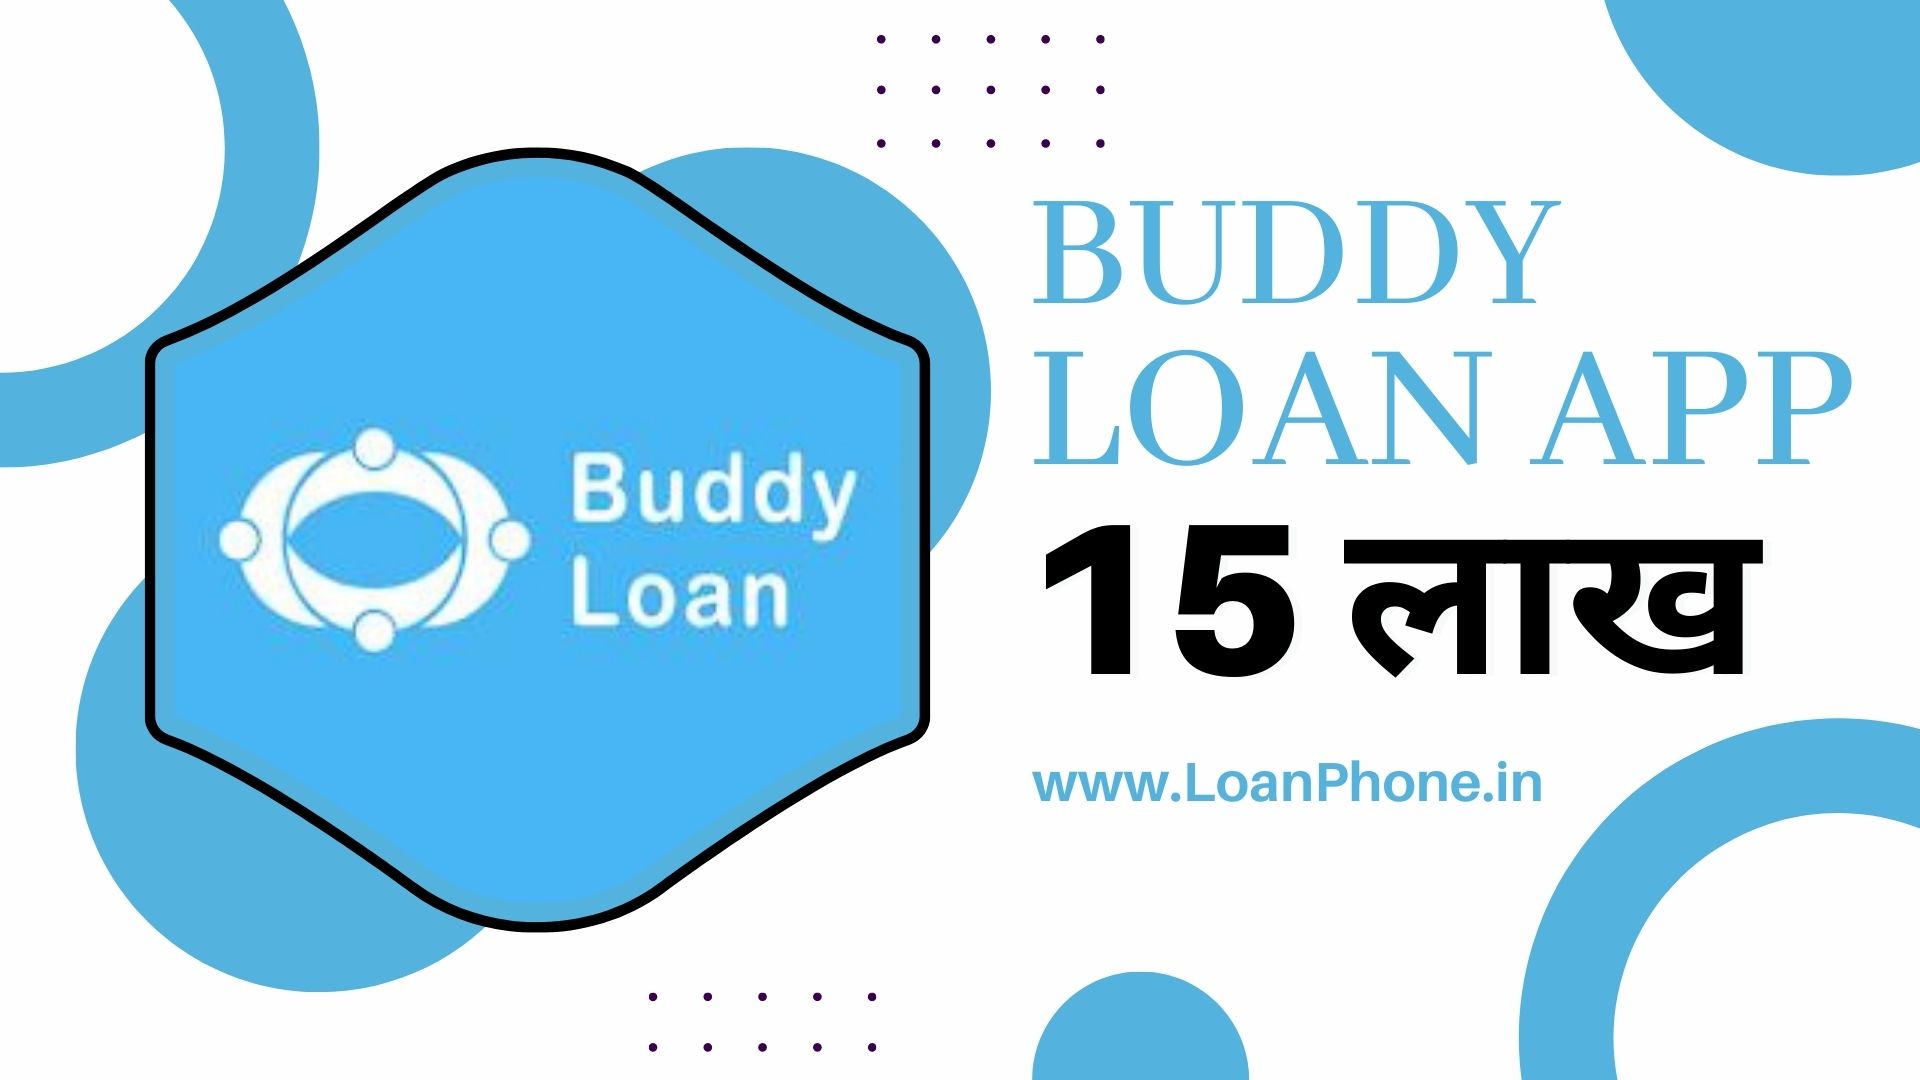 BBuddy Loan App से कितने तक का लोन मिल सकता है?uddy Loan App से लोन कैसे लें? Buddy Loan App Review |